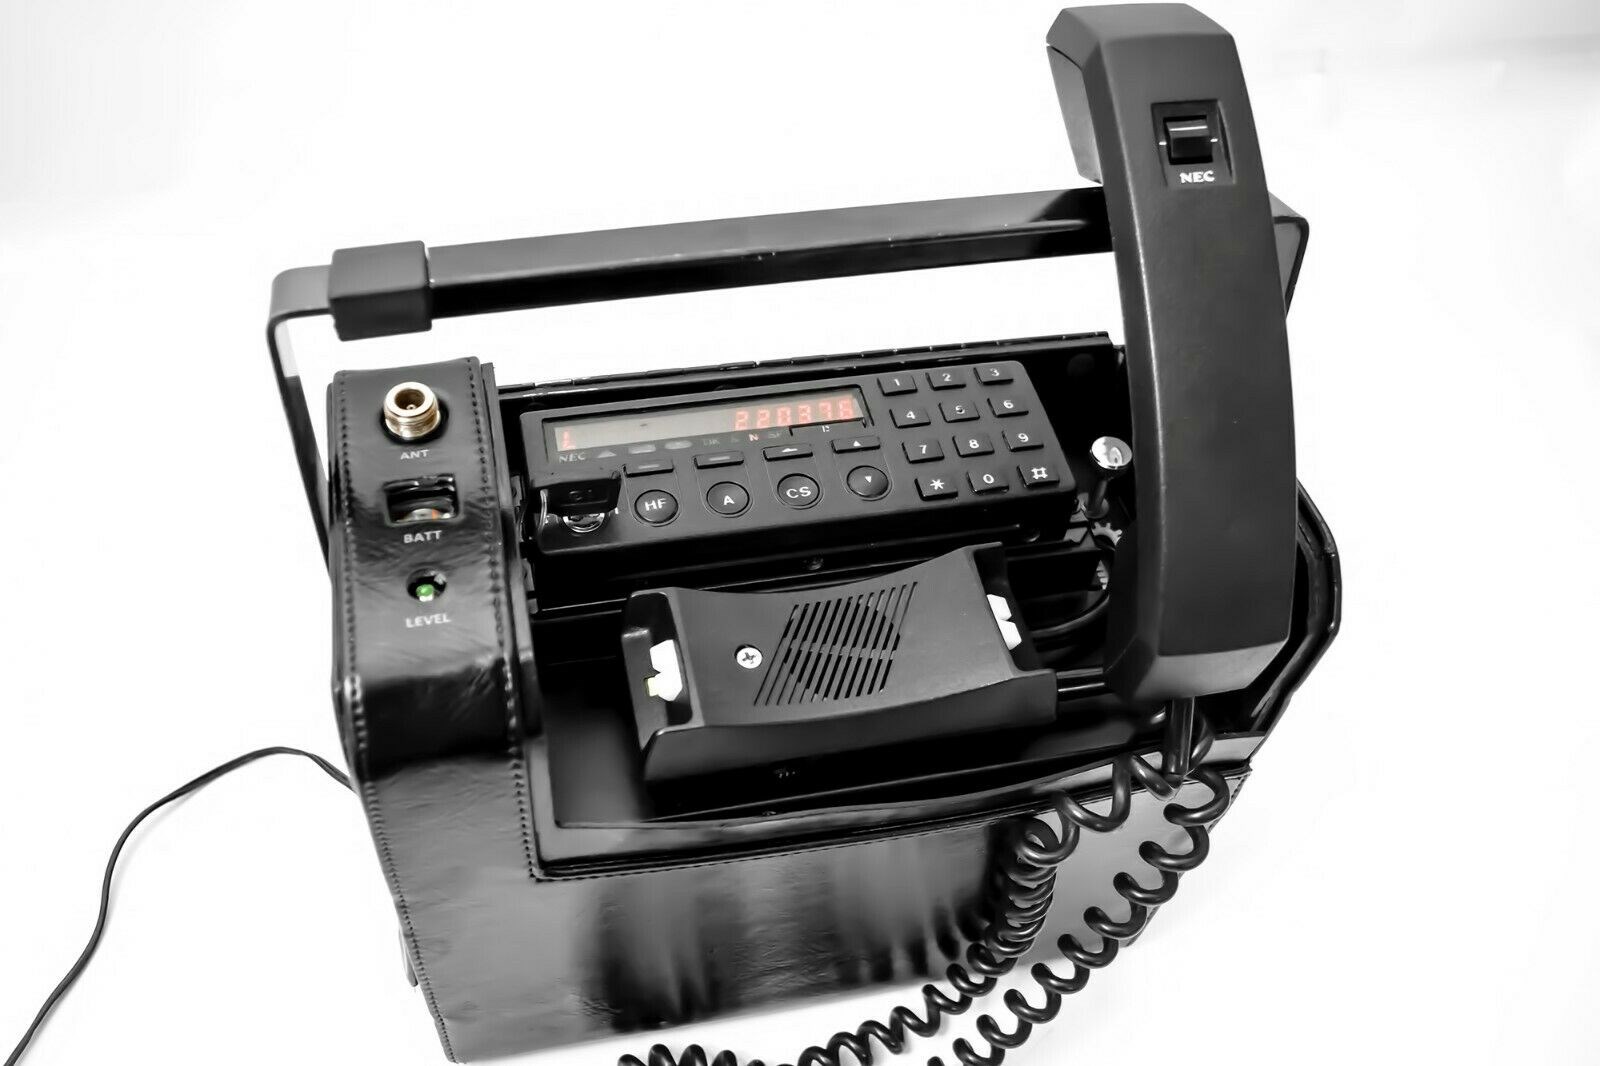 Koble gammel snurretelefon opp mot telefonnett i huset -  - SjurVik